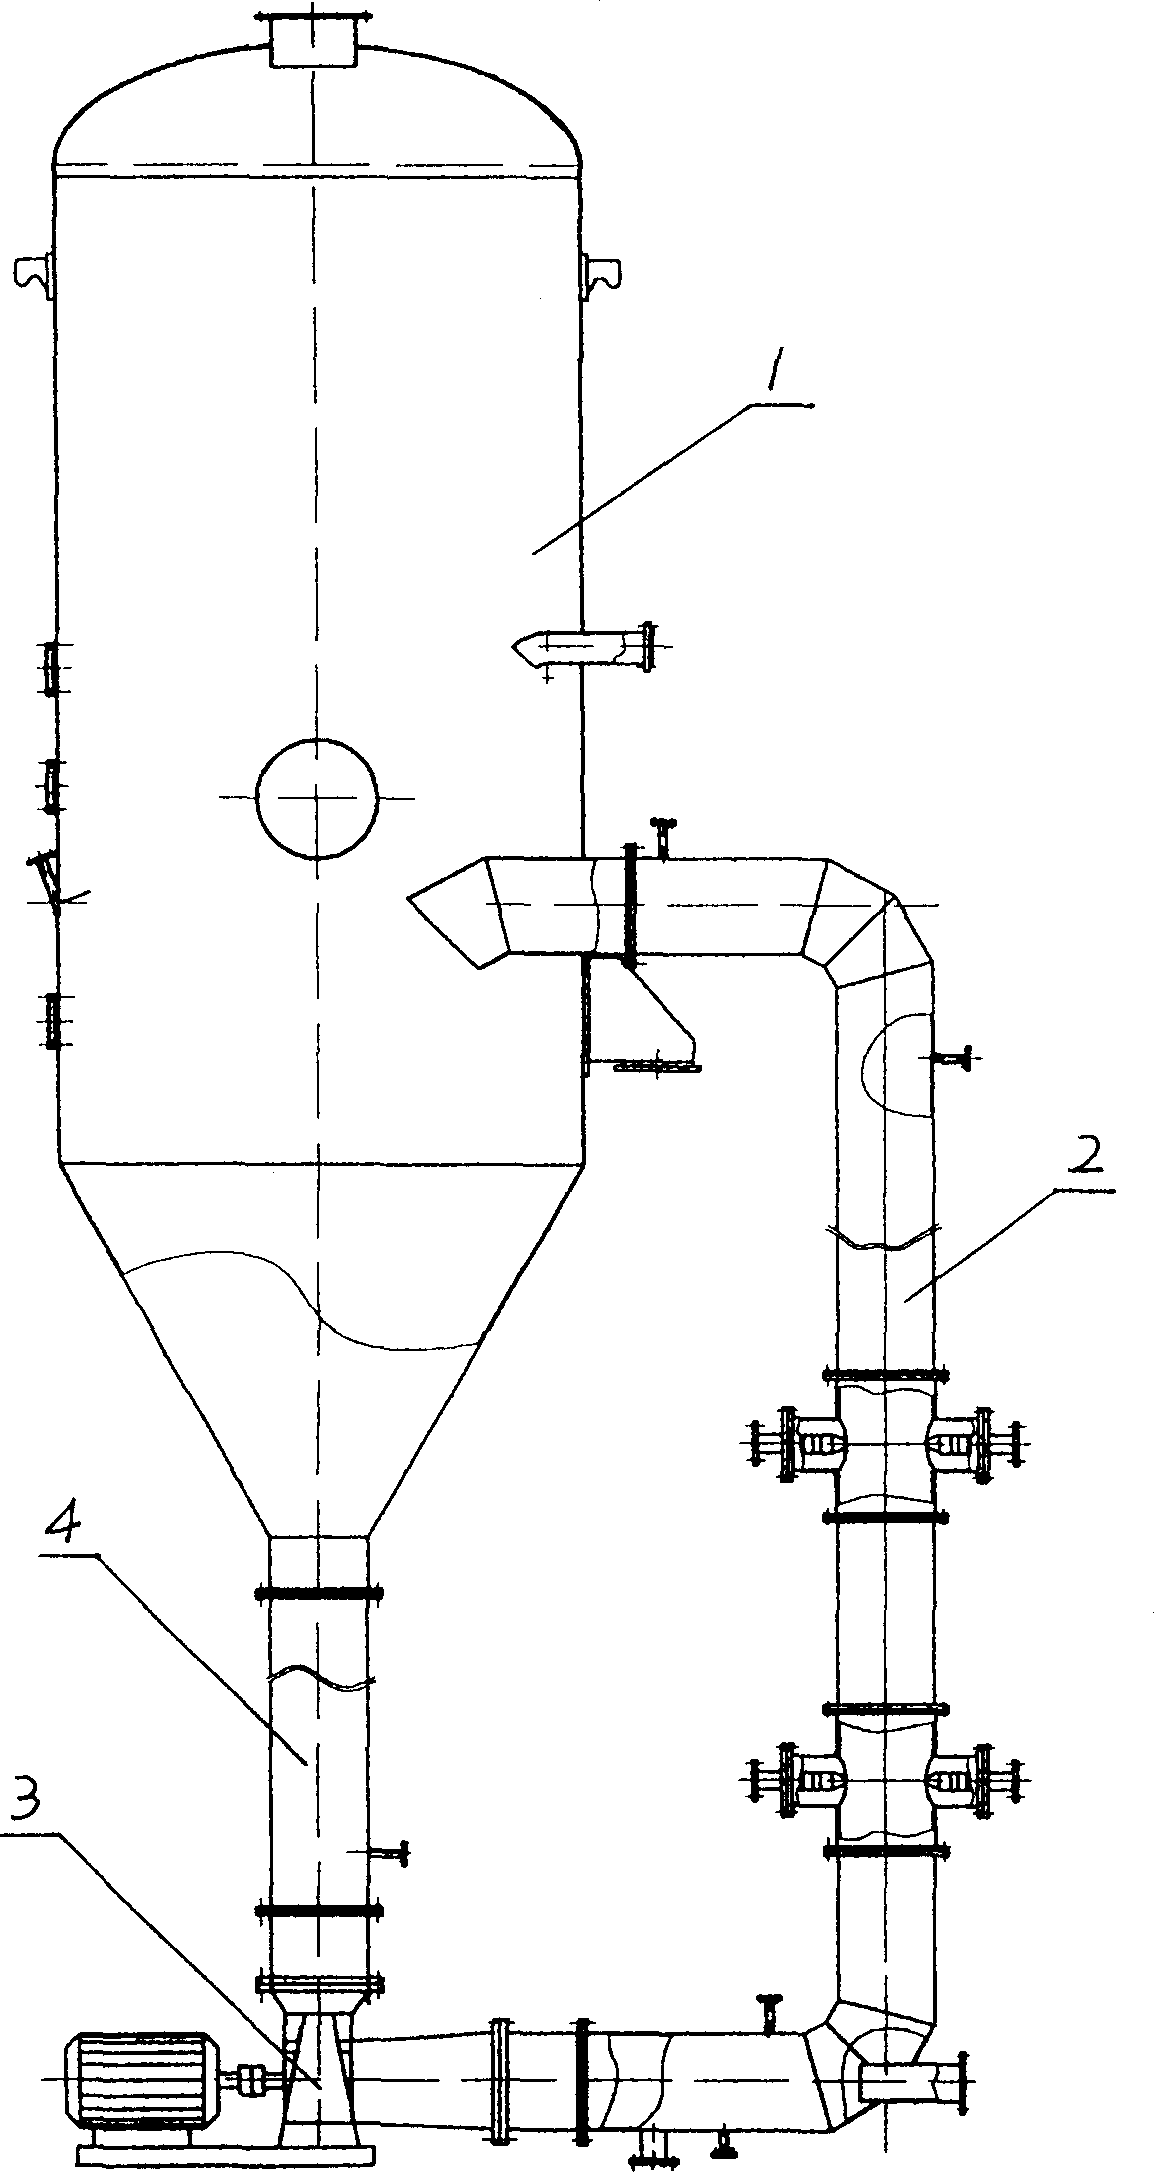 Coproduction method of diammonium phosphate and monoammonium phosphate and equipment for neutralizing washing liquid